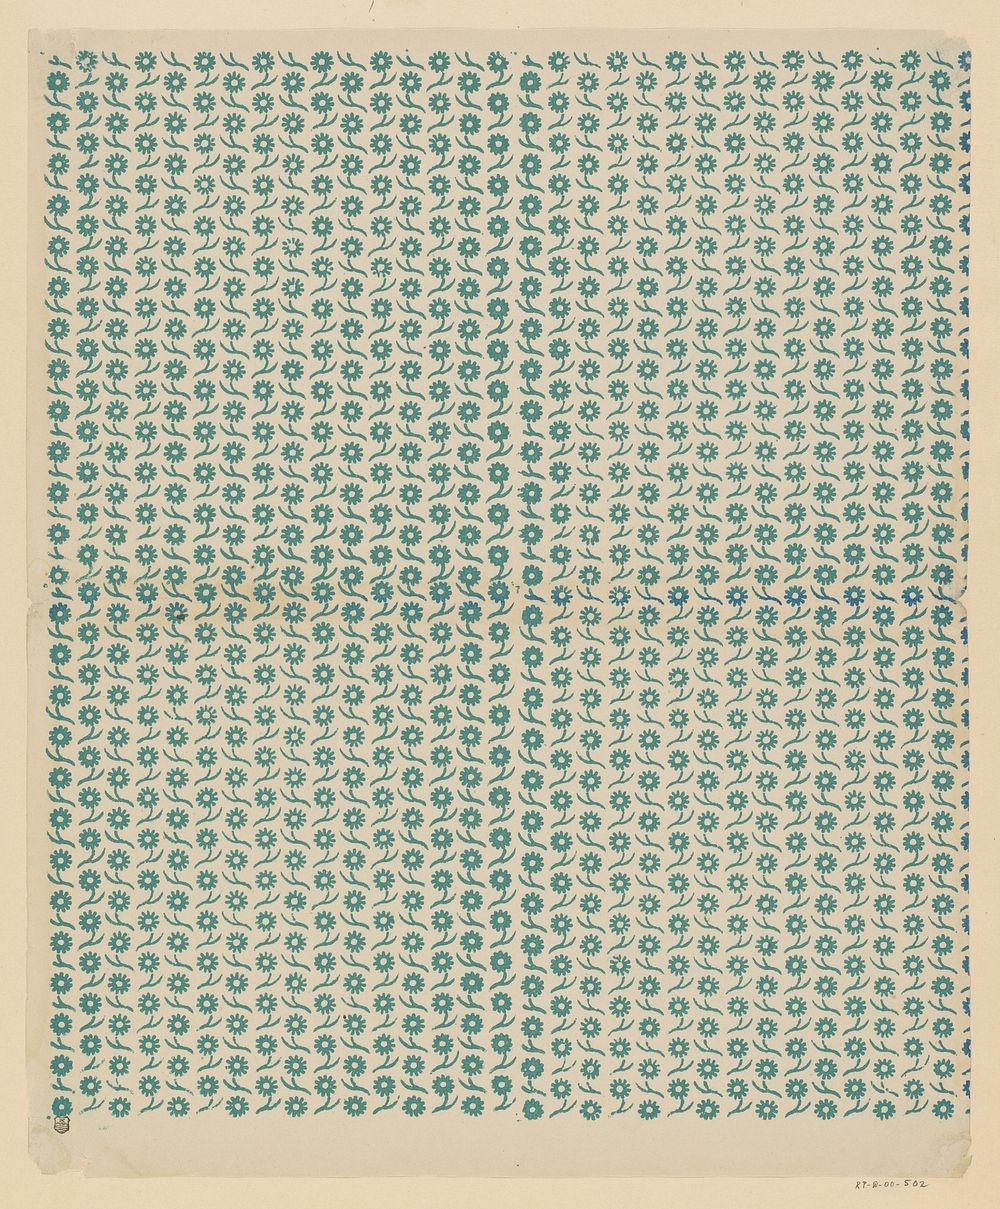 Blad met banenpatroon van bloemmotief (1800 - 1900) by anonymous